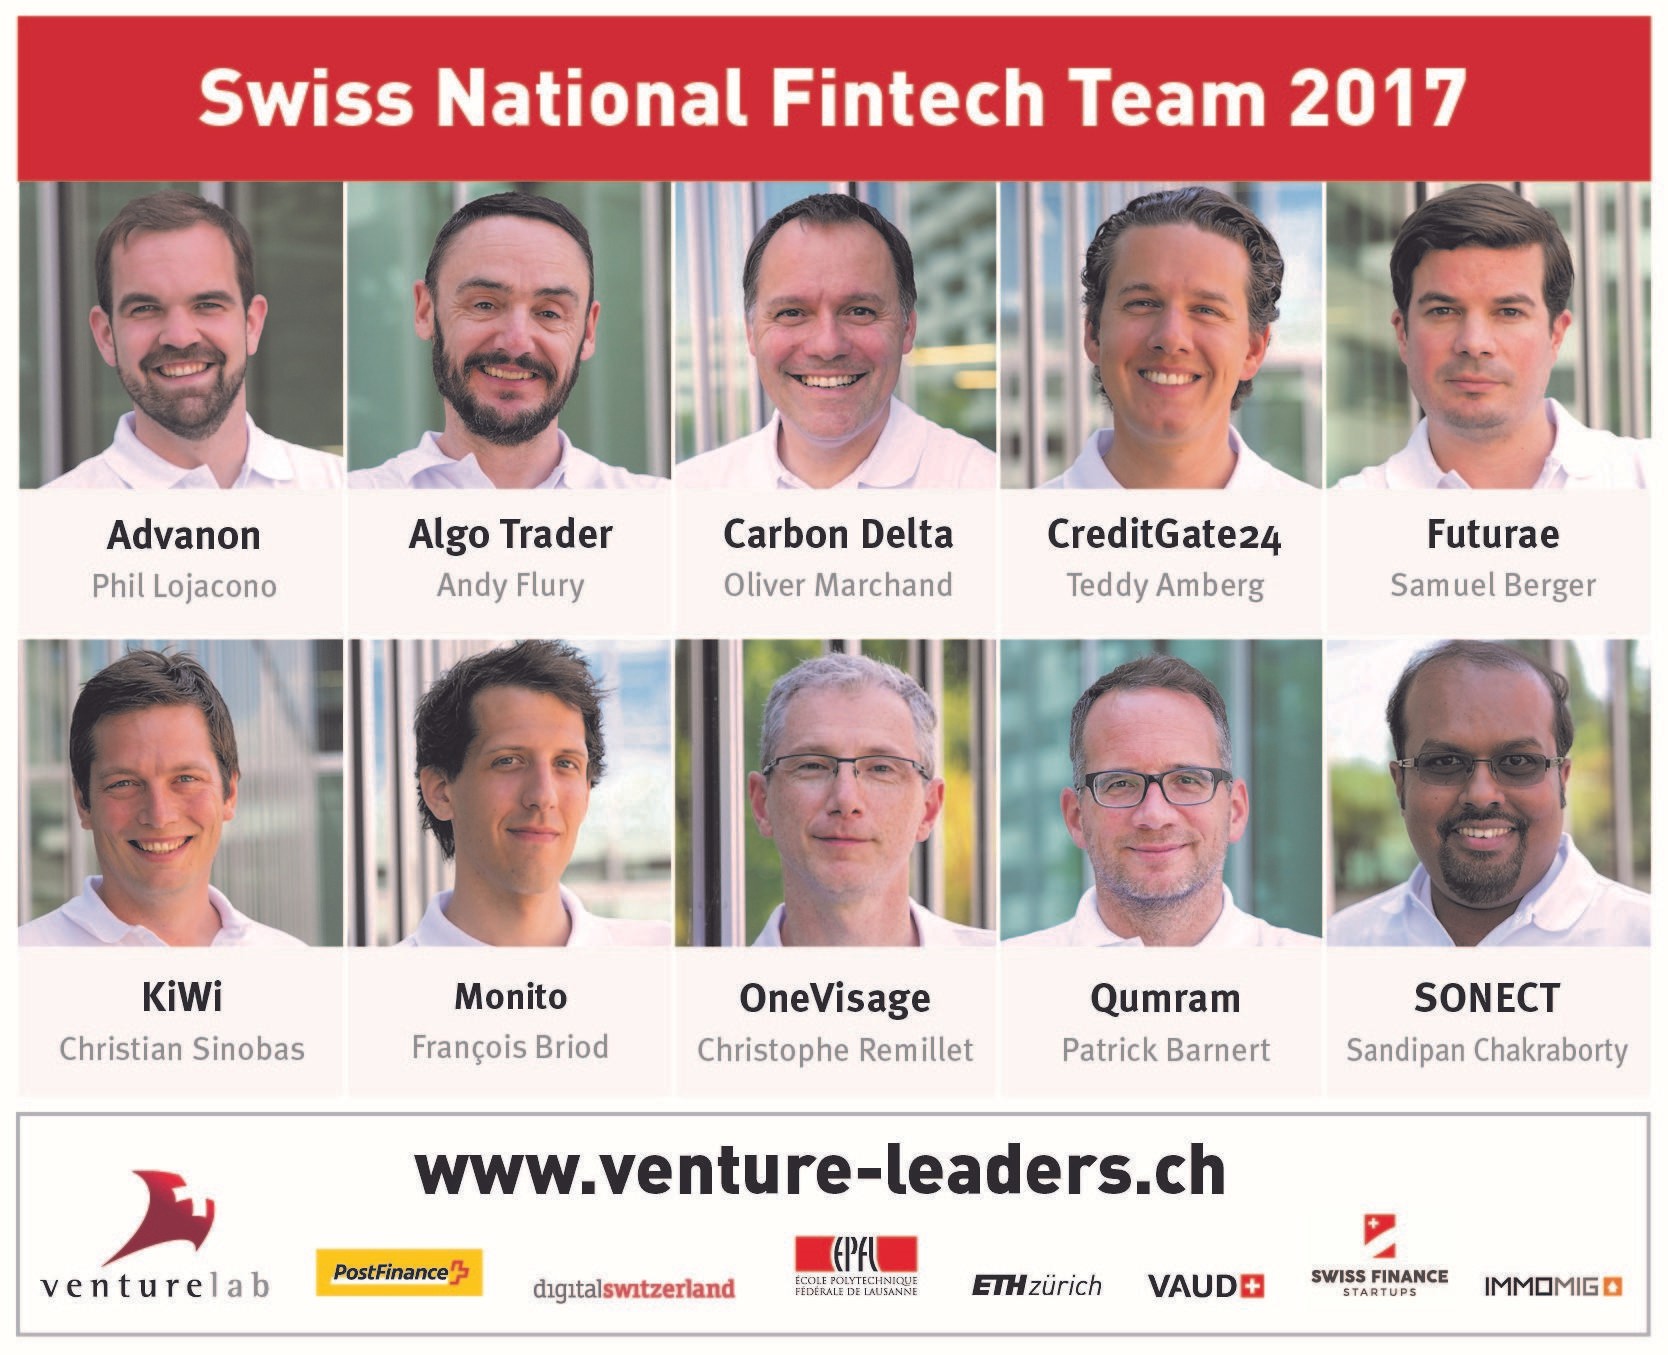 Swiss National Fintech Team 2017